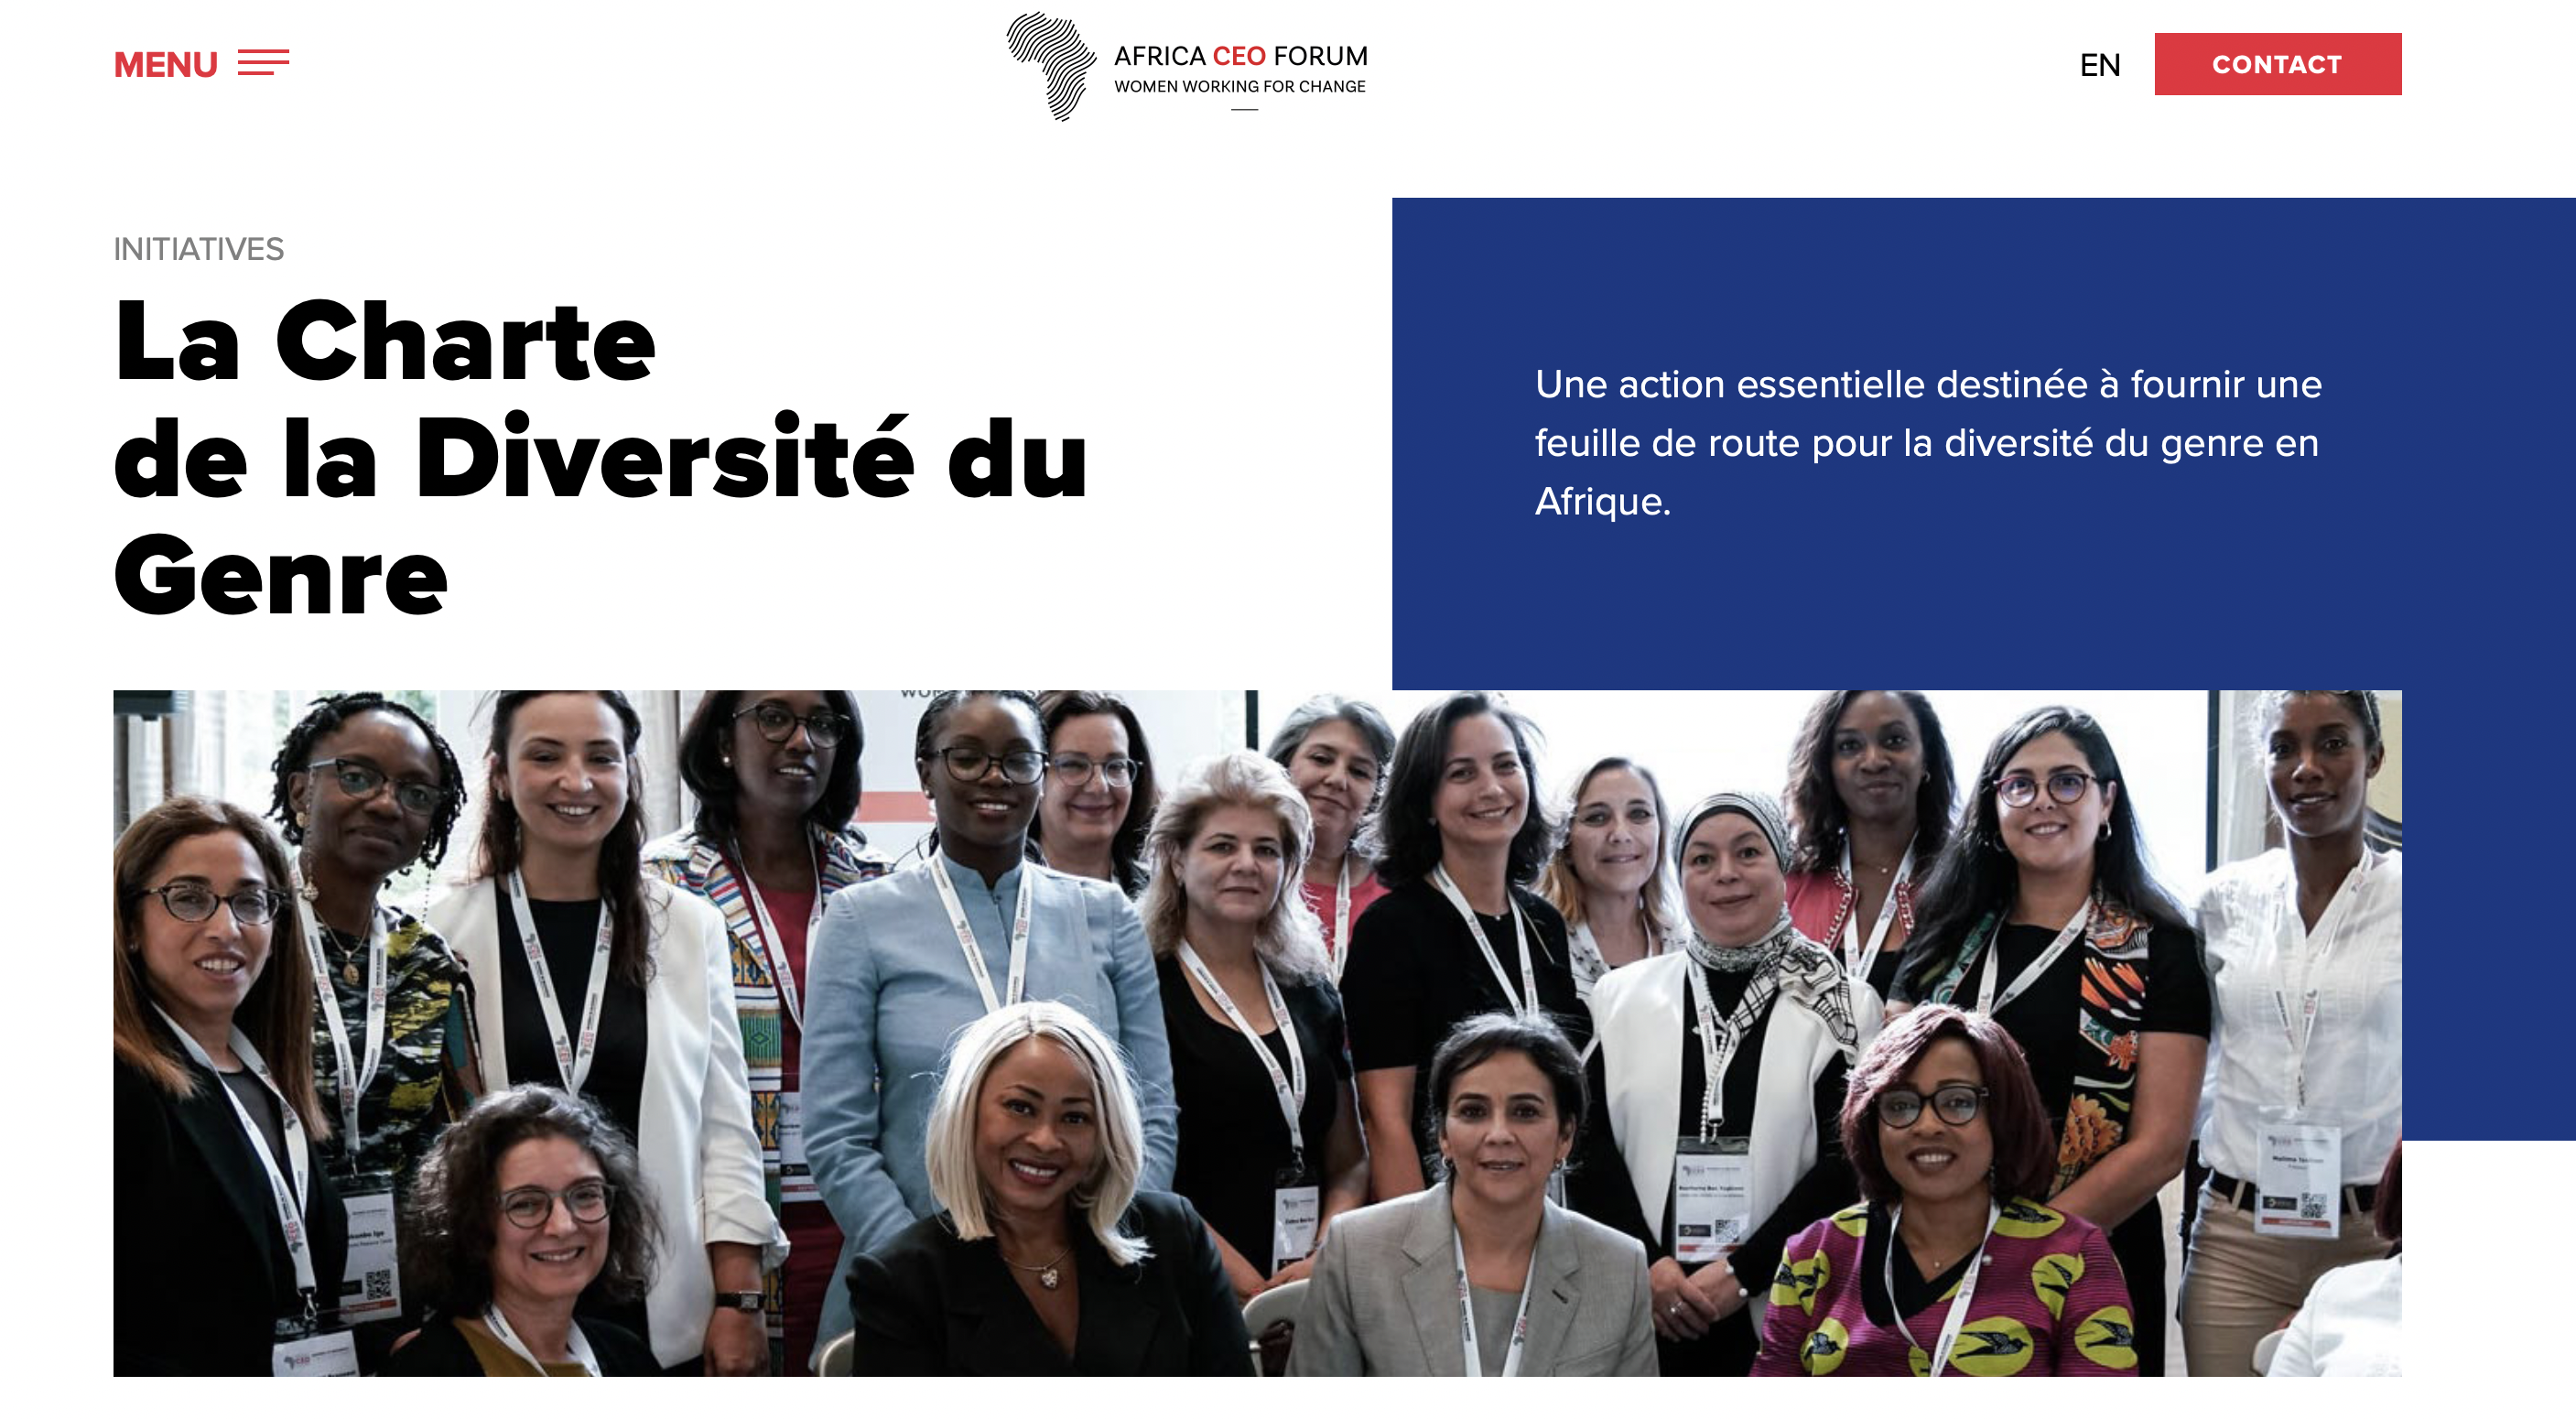 La Charte de la Diversité du Genre, une action de Women Working for Change (WFC) pour la diversité du genre en Afrique